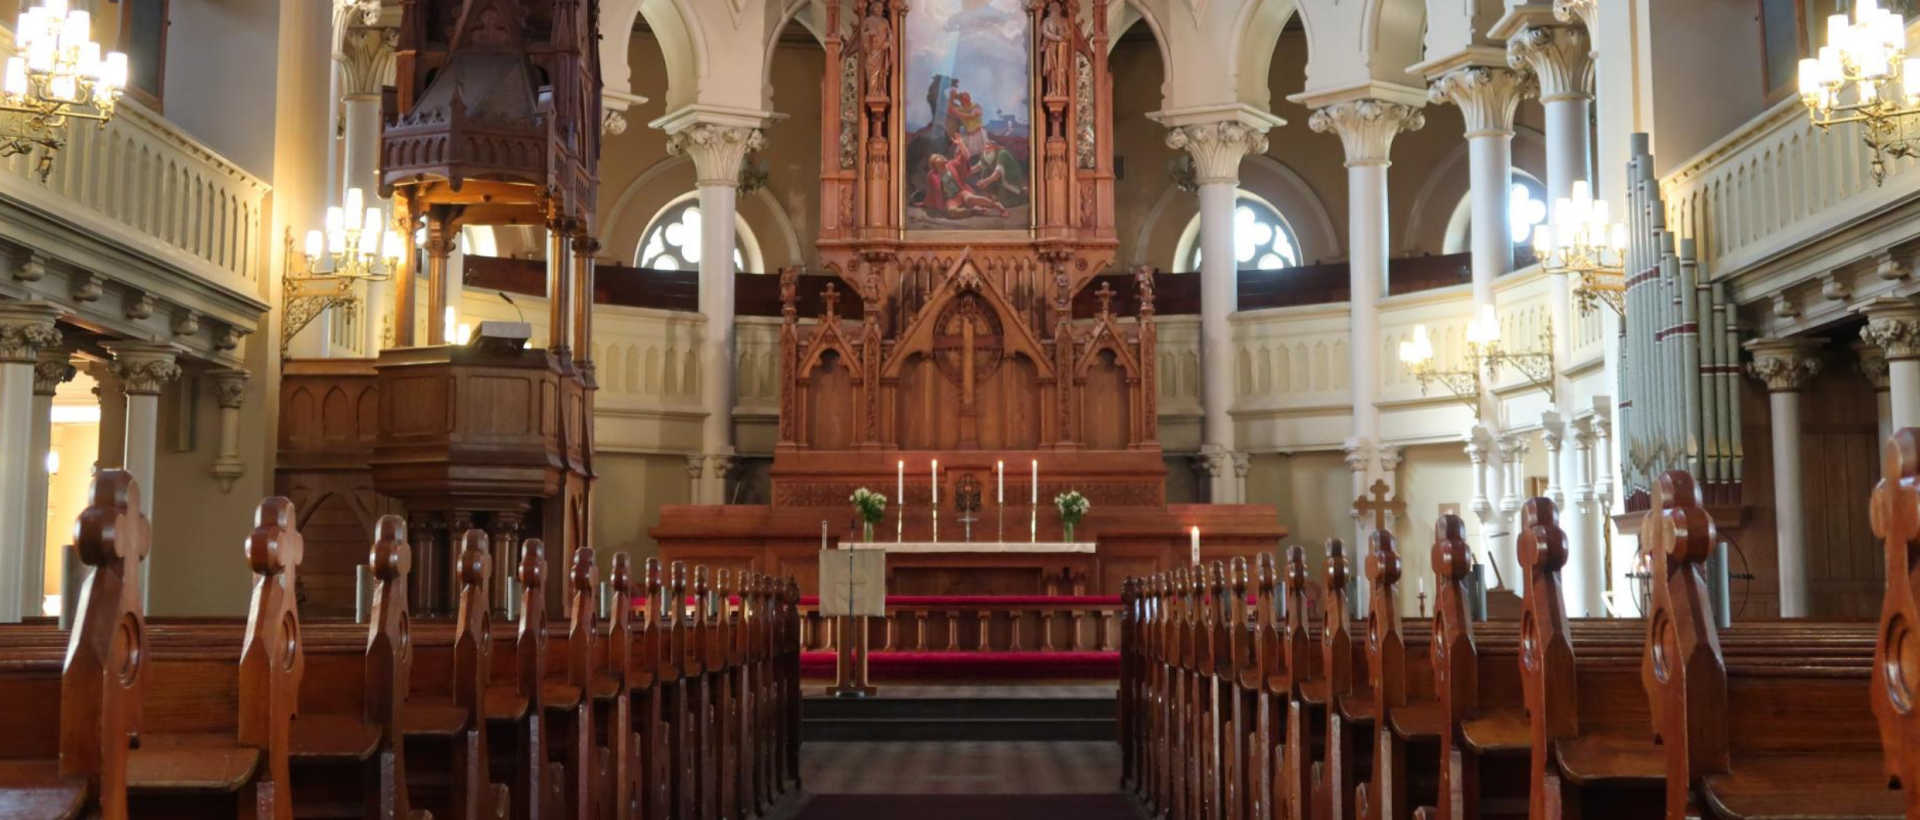 Insidan av en kyrka med altare och bänkar